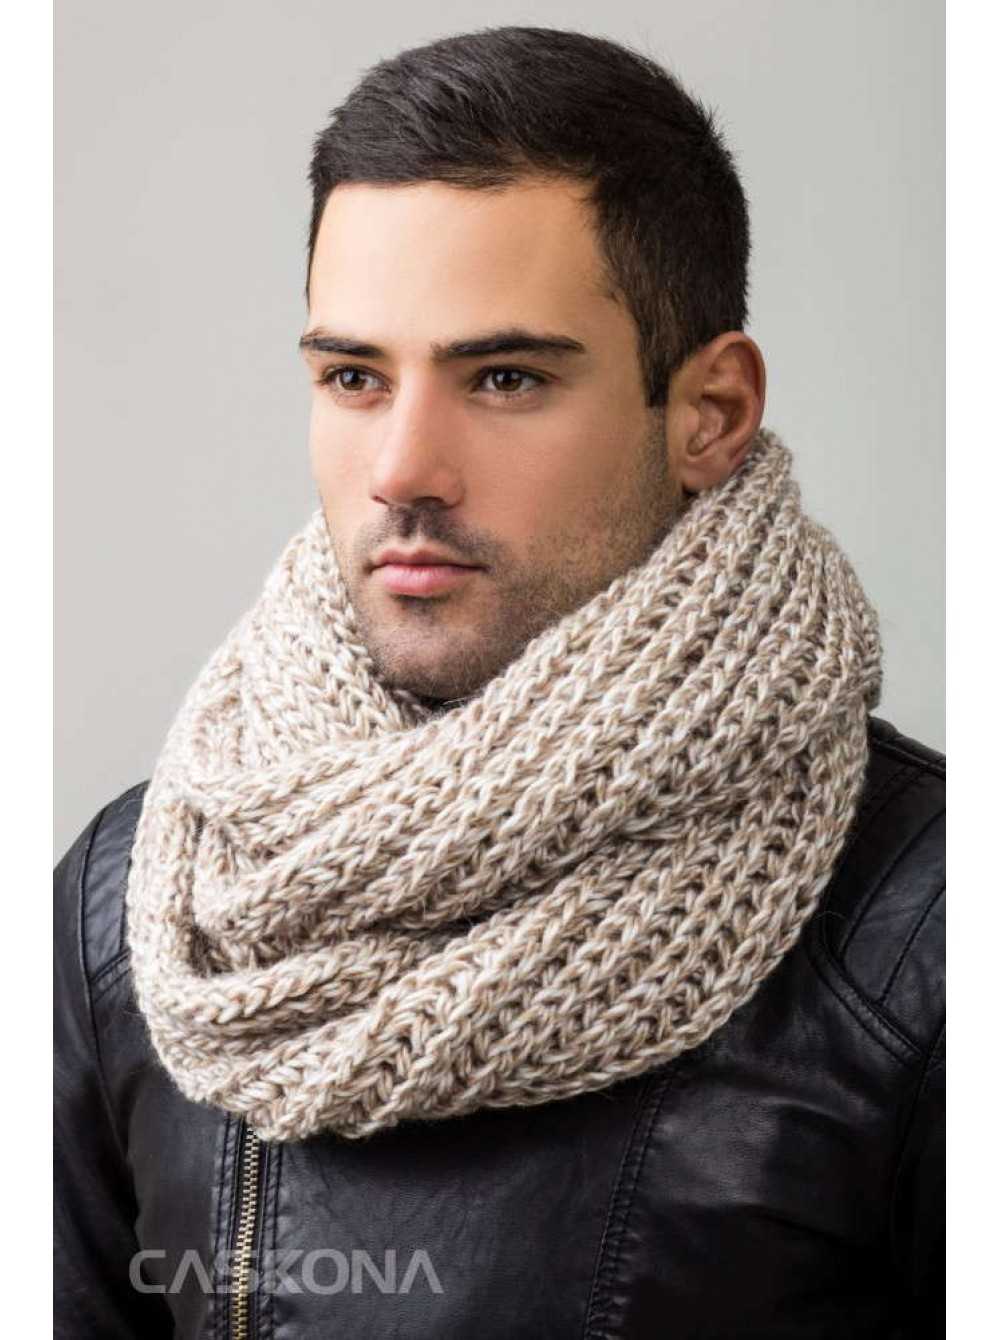 Лучшие зимние шарфы для мужчин модные в 2021 году